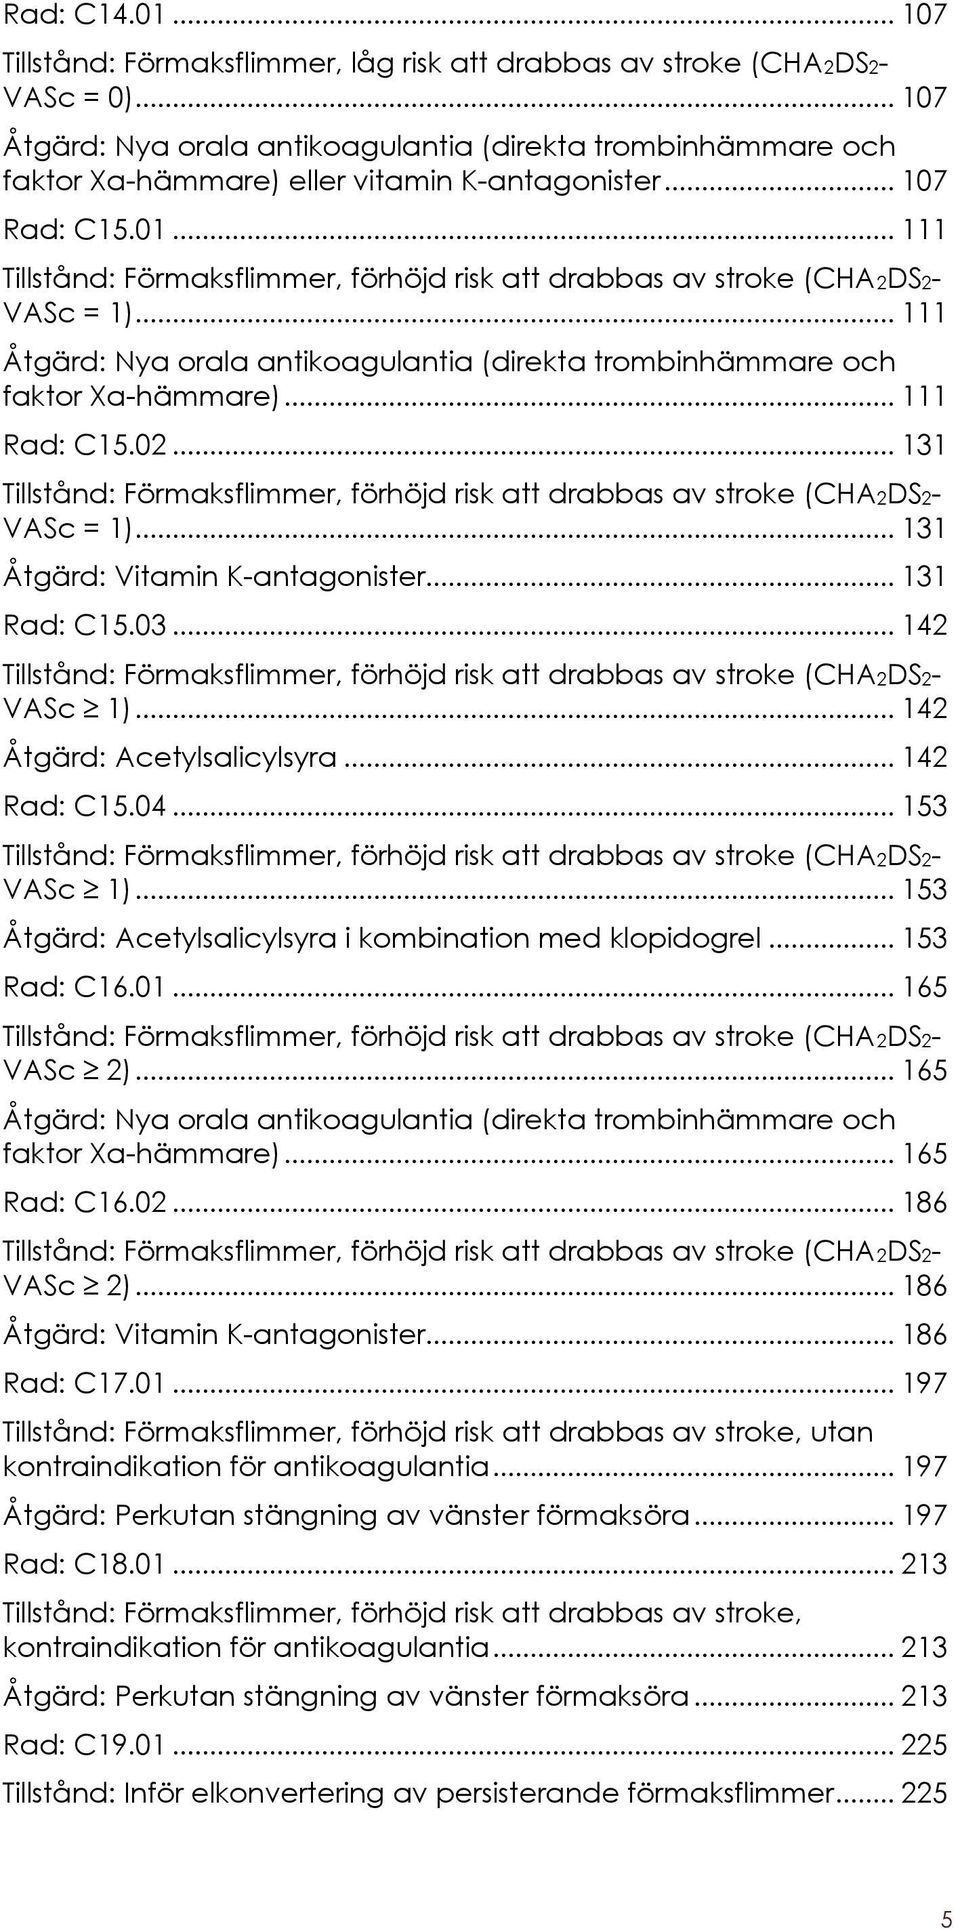 .. 111 Tillstånd: Förmaksflimmer, förhöjd risk att drabbas av stroke (CHA2DS2- VASc = 1)... 111 Åtgärd: Nya orala antikoagulantia (direkta trombinhämmare och faktor Xa-hämmare)... 111 Rad: C15.02.